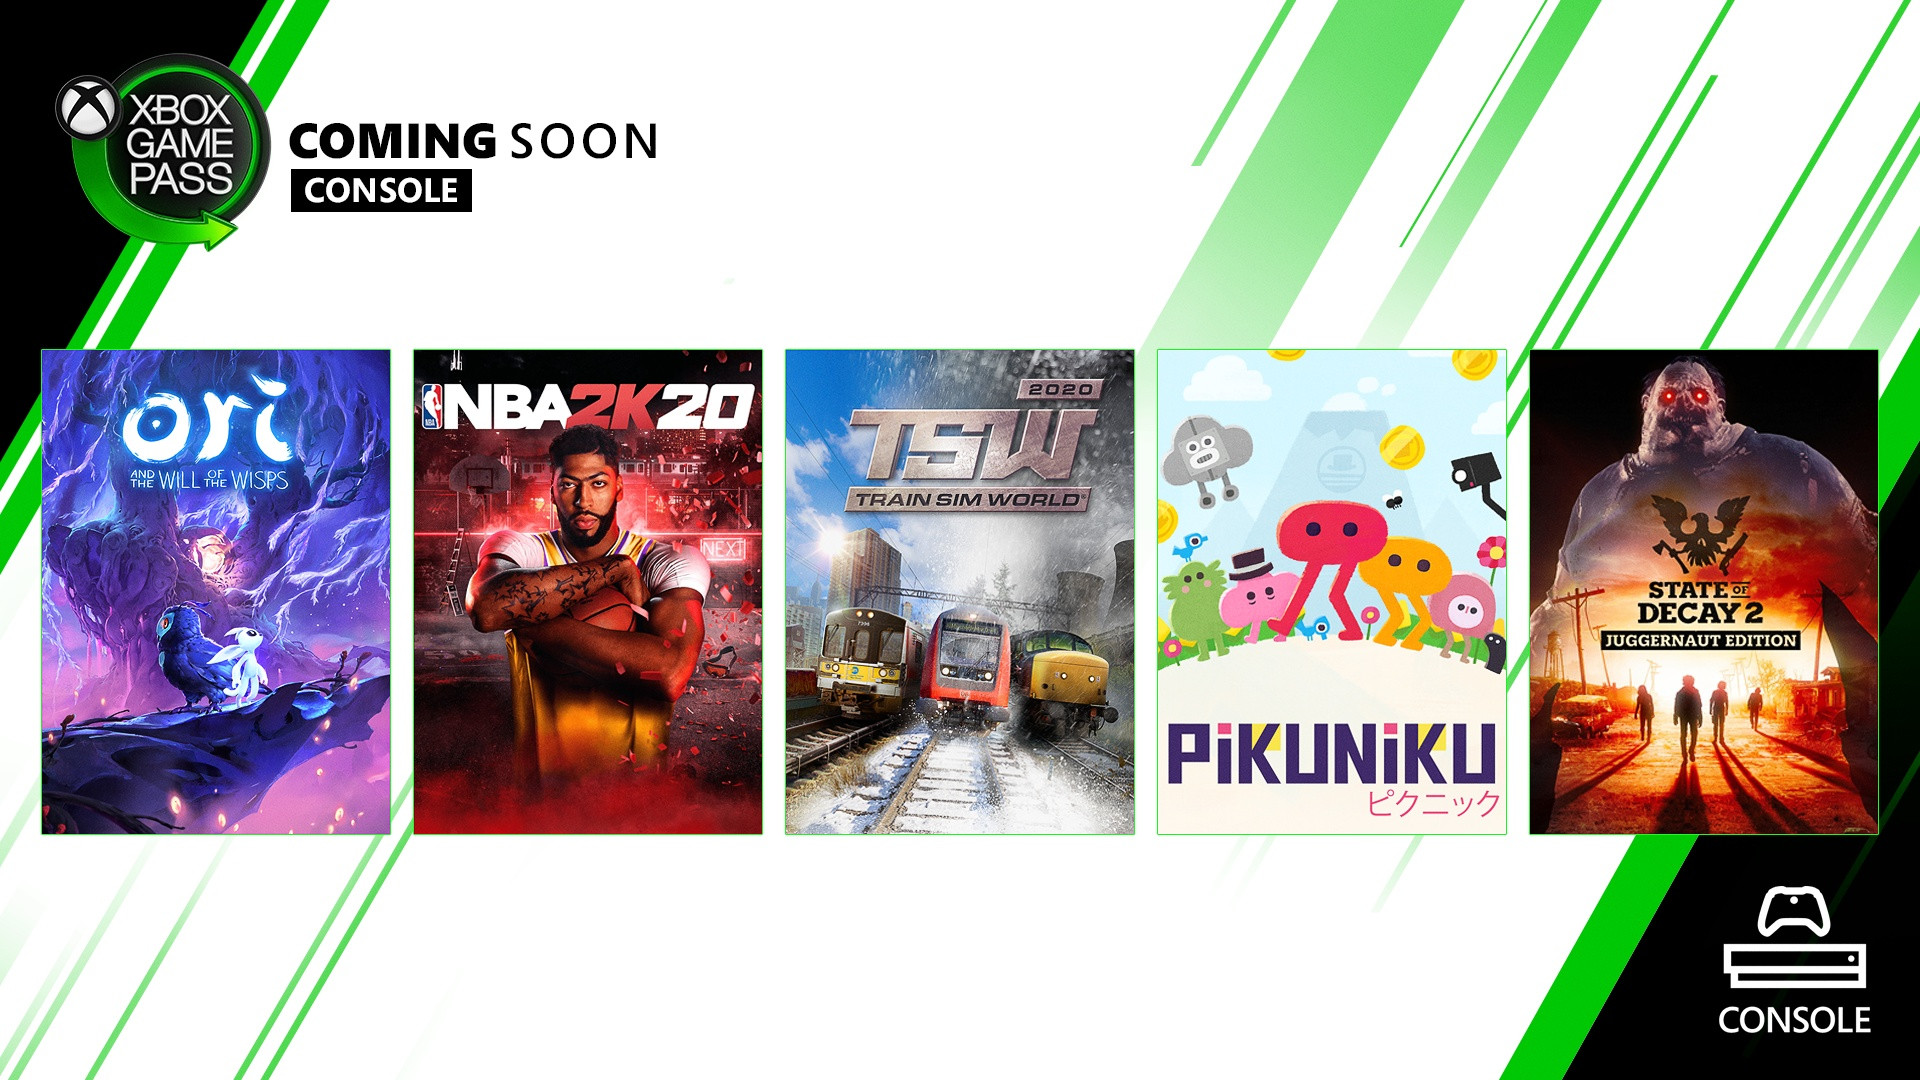 Próximamente en Xbox Game Pass para consola: NBA 2K20, Ori y la Voluntad de los Wisps, y más